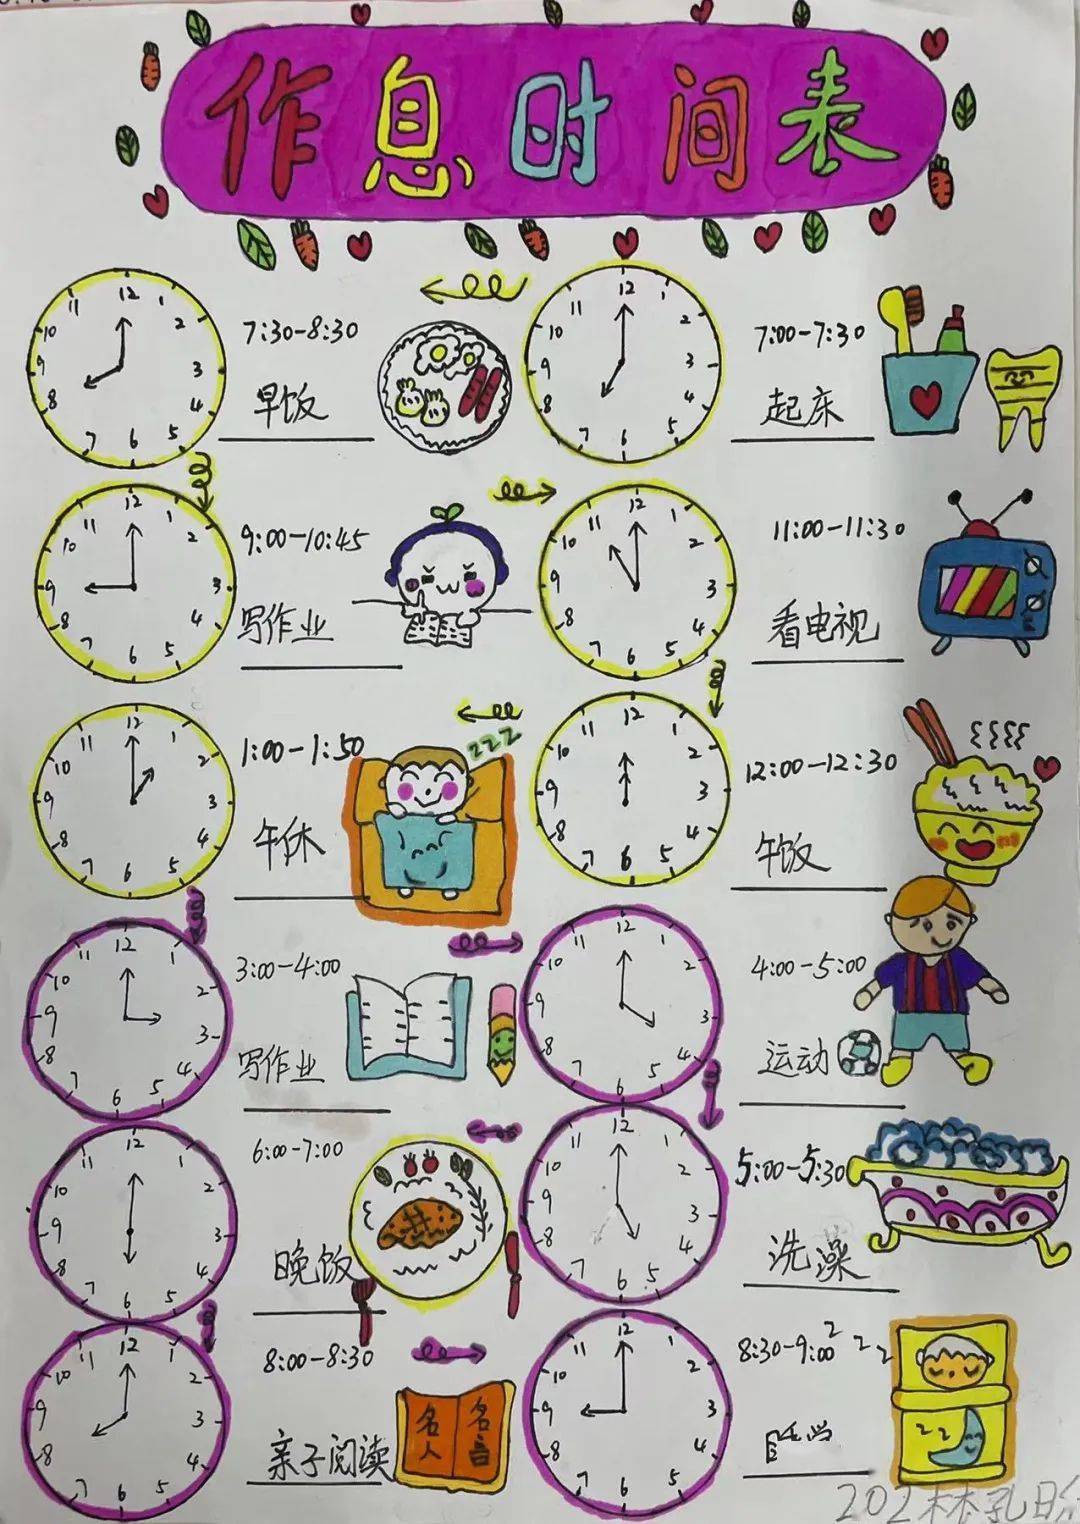 一年级钟表作息时间表图片